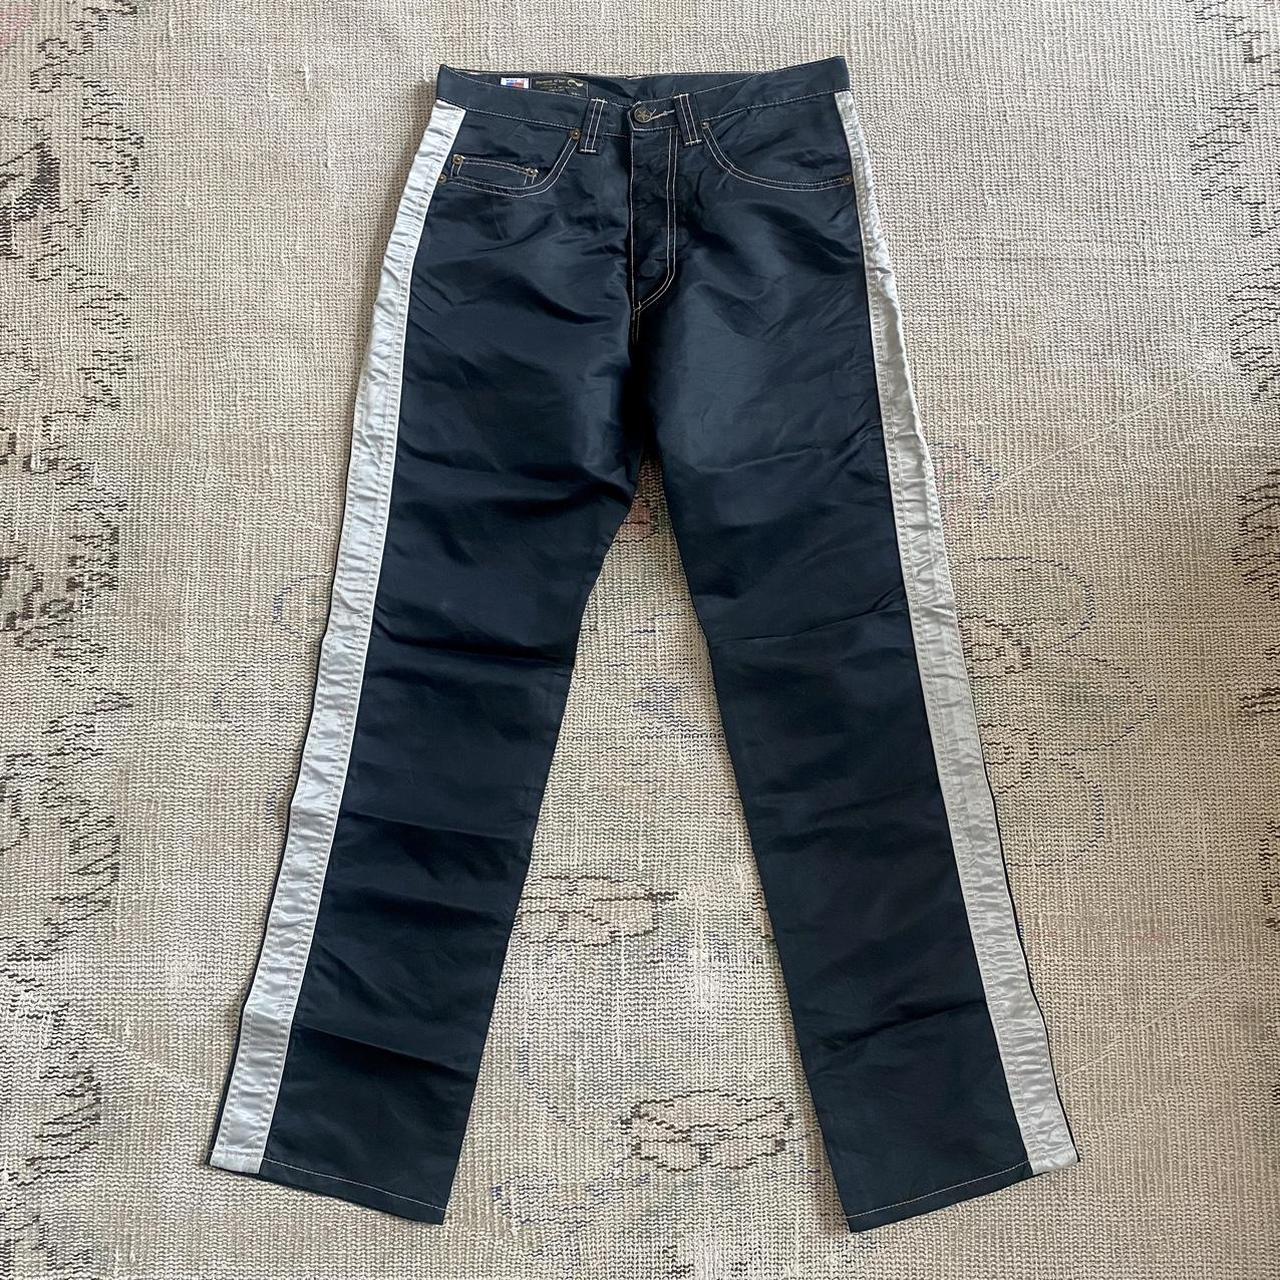 Men Shiny PU Leather Leggings Wet Look Long Pouch Zip Pants Trousers  Clubwear - Walmart.com